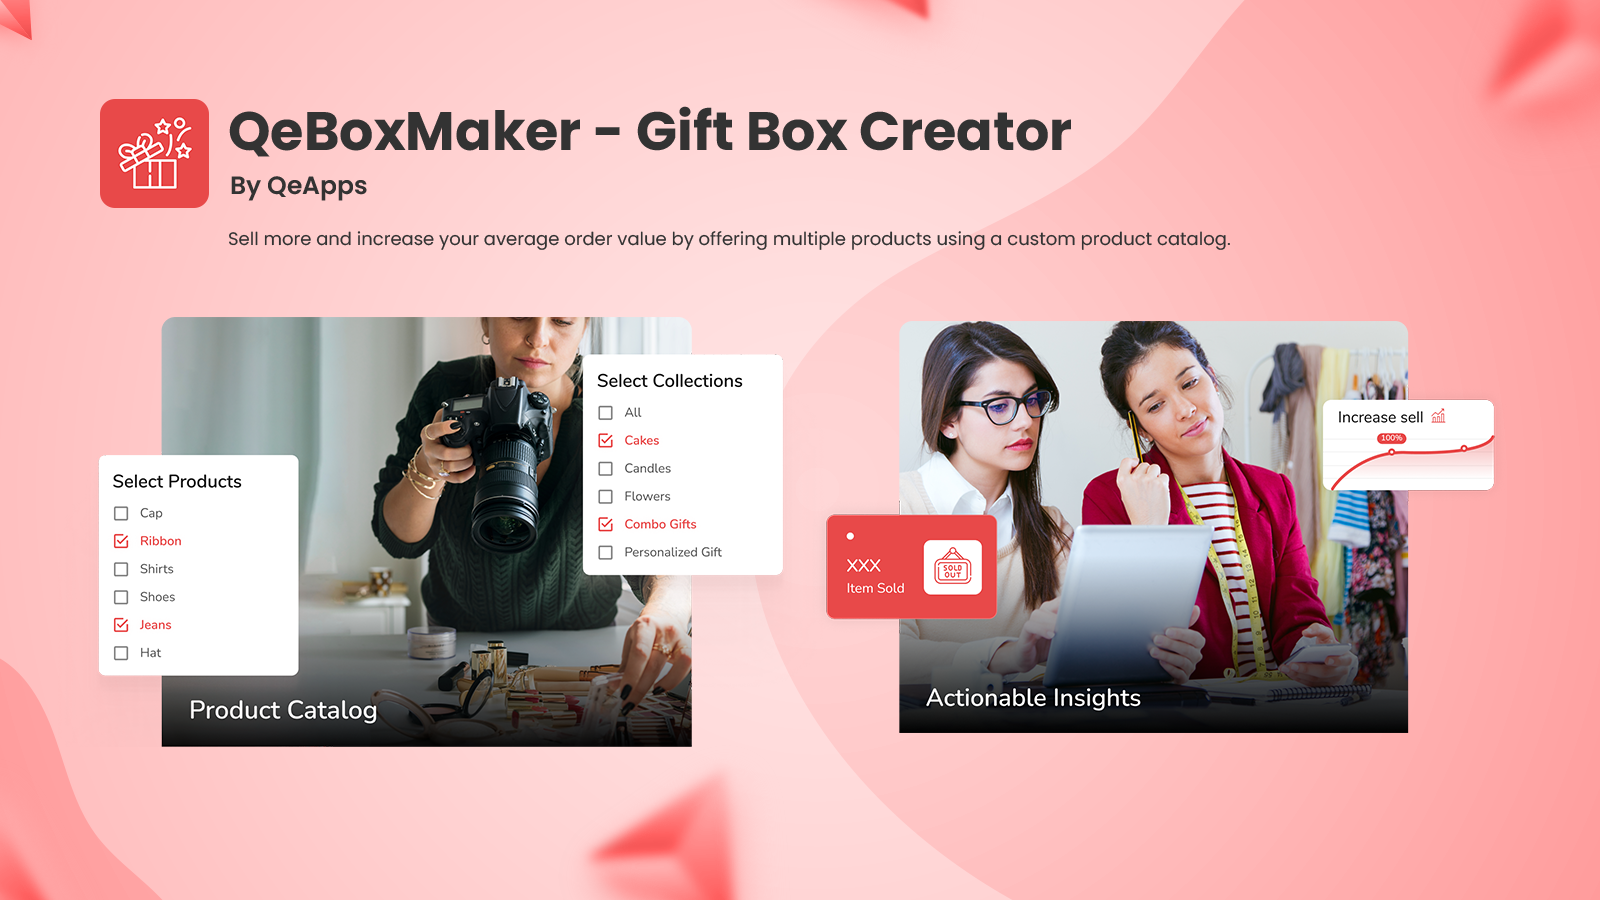 Streamlined Design for Easy Gift Box Creation